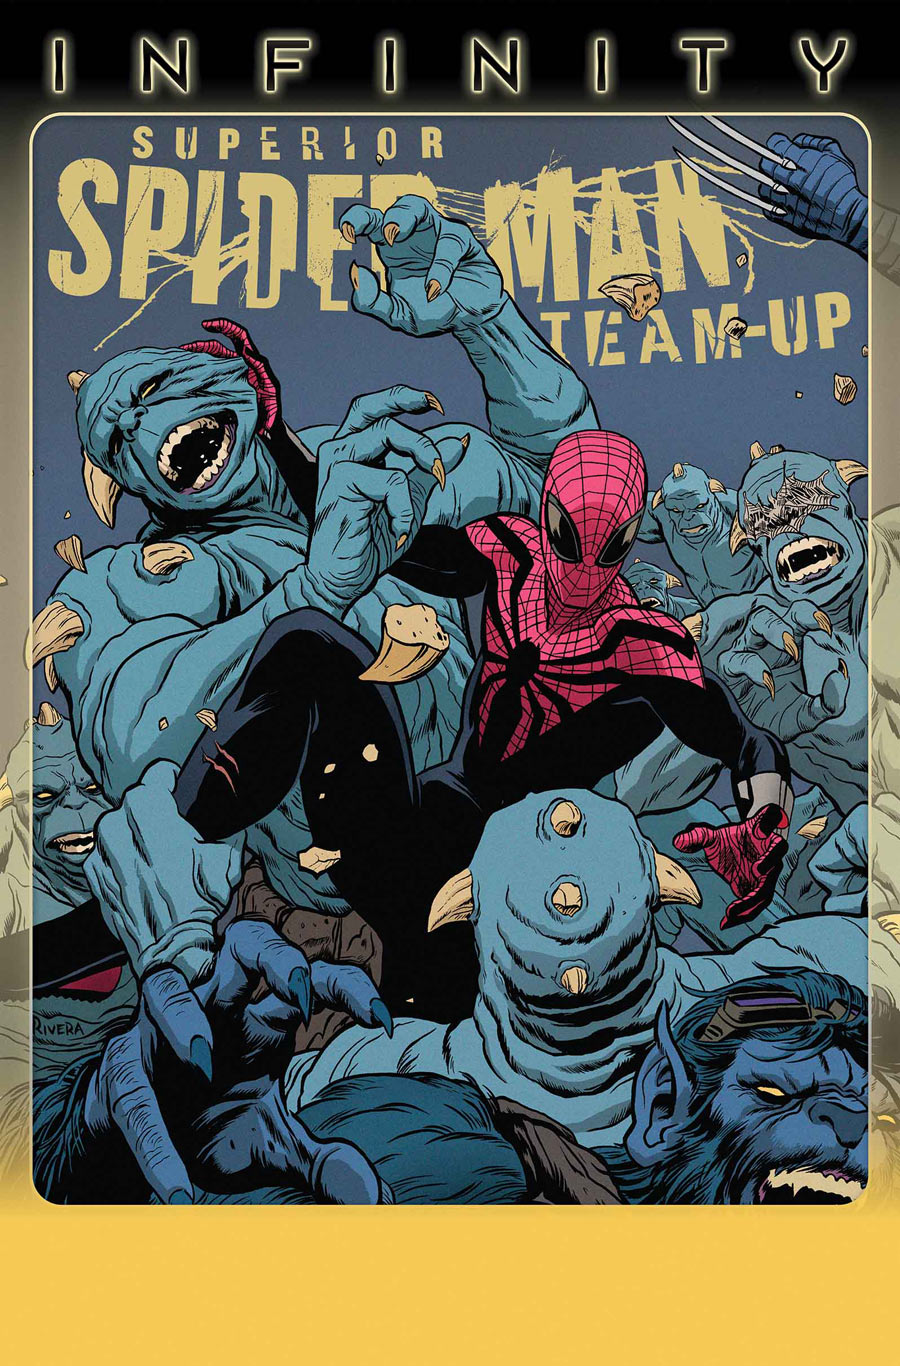 Superior Spider-Man Team-Up Vol 1 3 | Marvel Database | Fandom